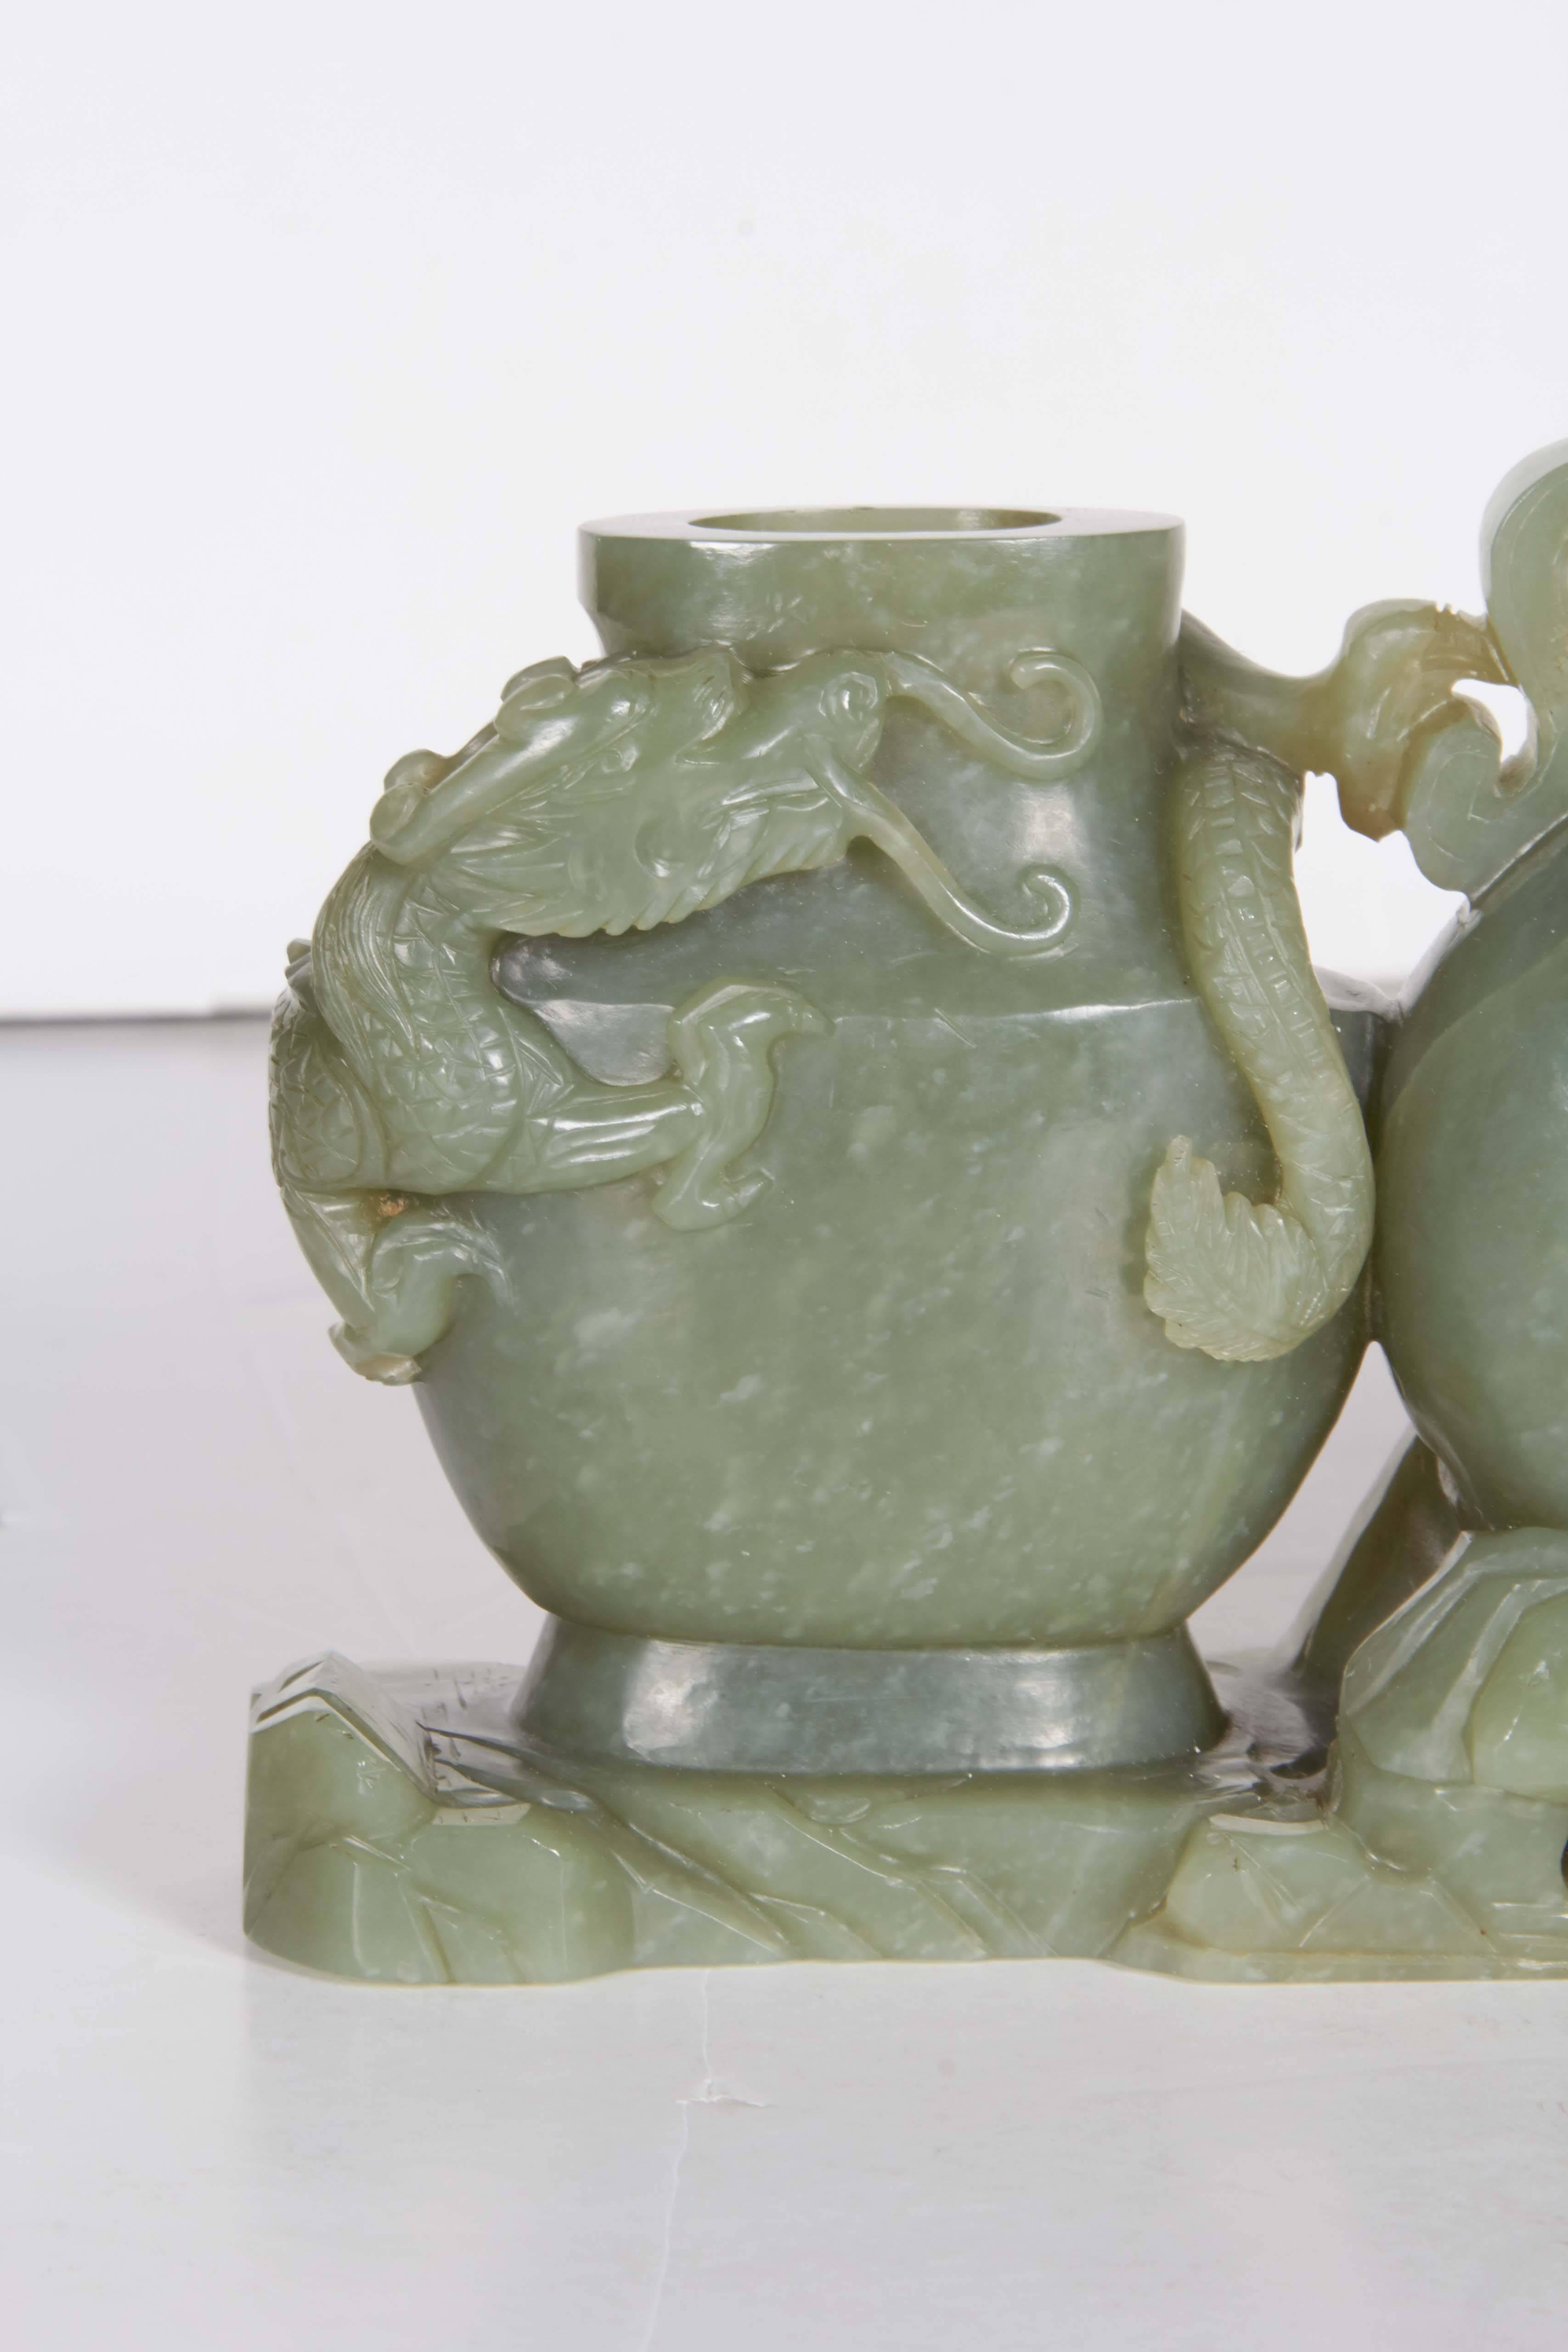 Lave-brosse à triple vase en vert céladon, extrêmement finement sculpté, de la dynastie chinoise Qing, avec un dragon impérial à l'arrière attaquant un oiseau à l'avant, 18e-19e siècle, période de la dynastie Qing.